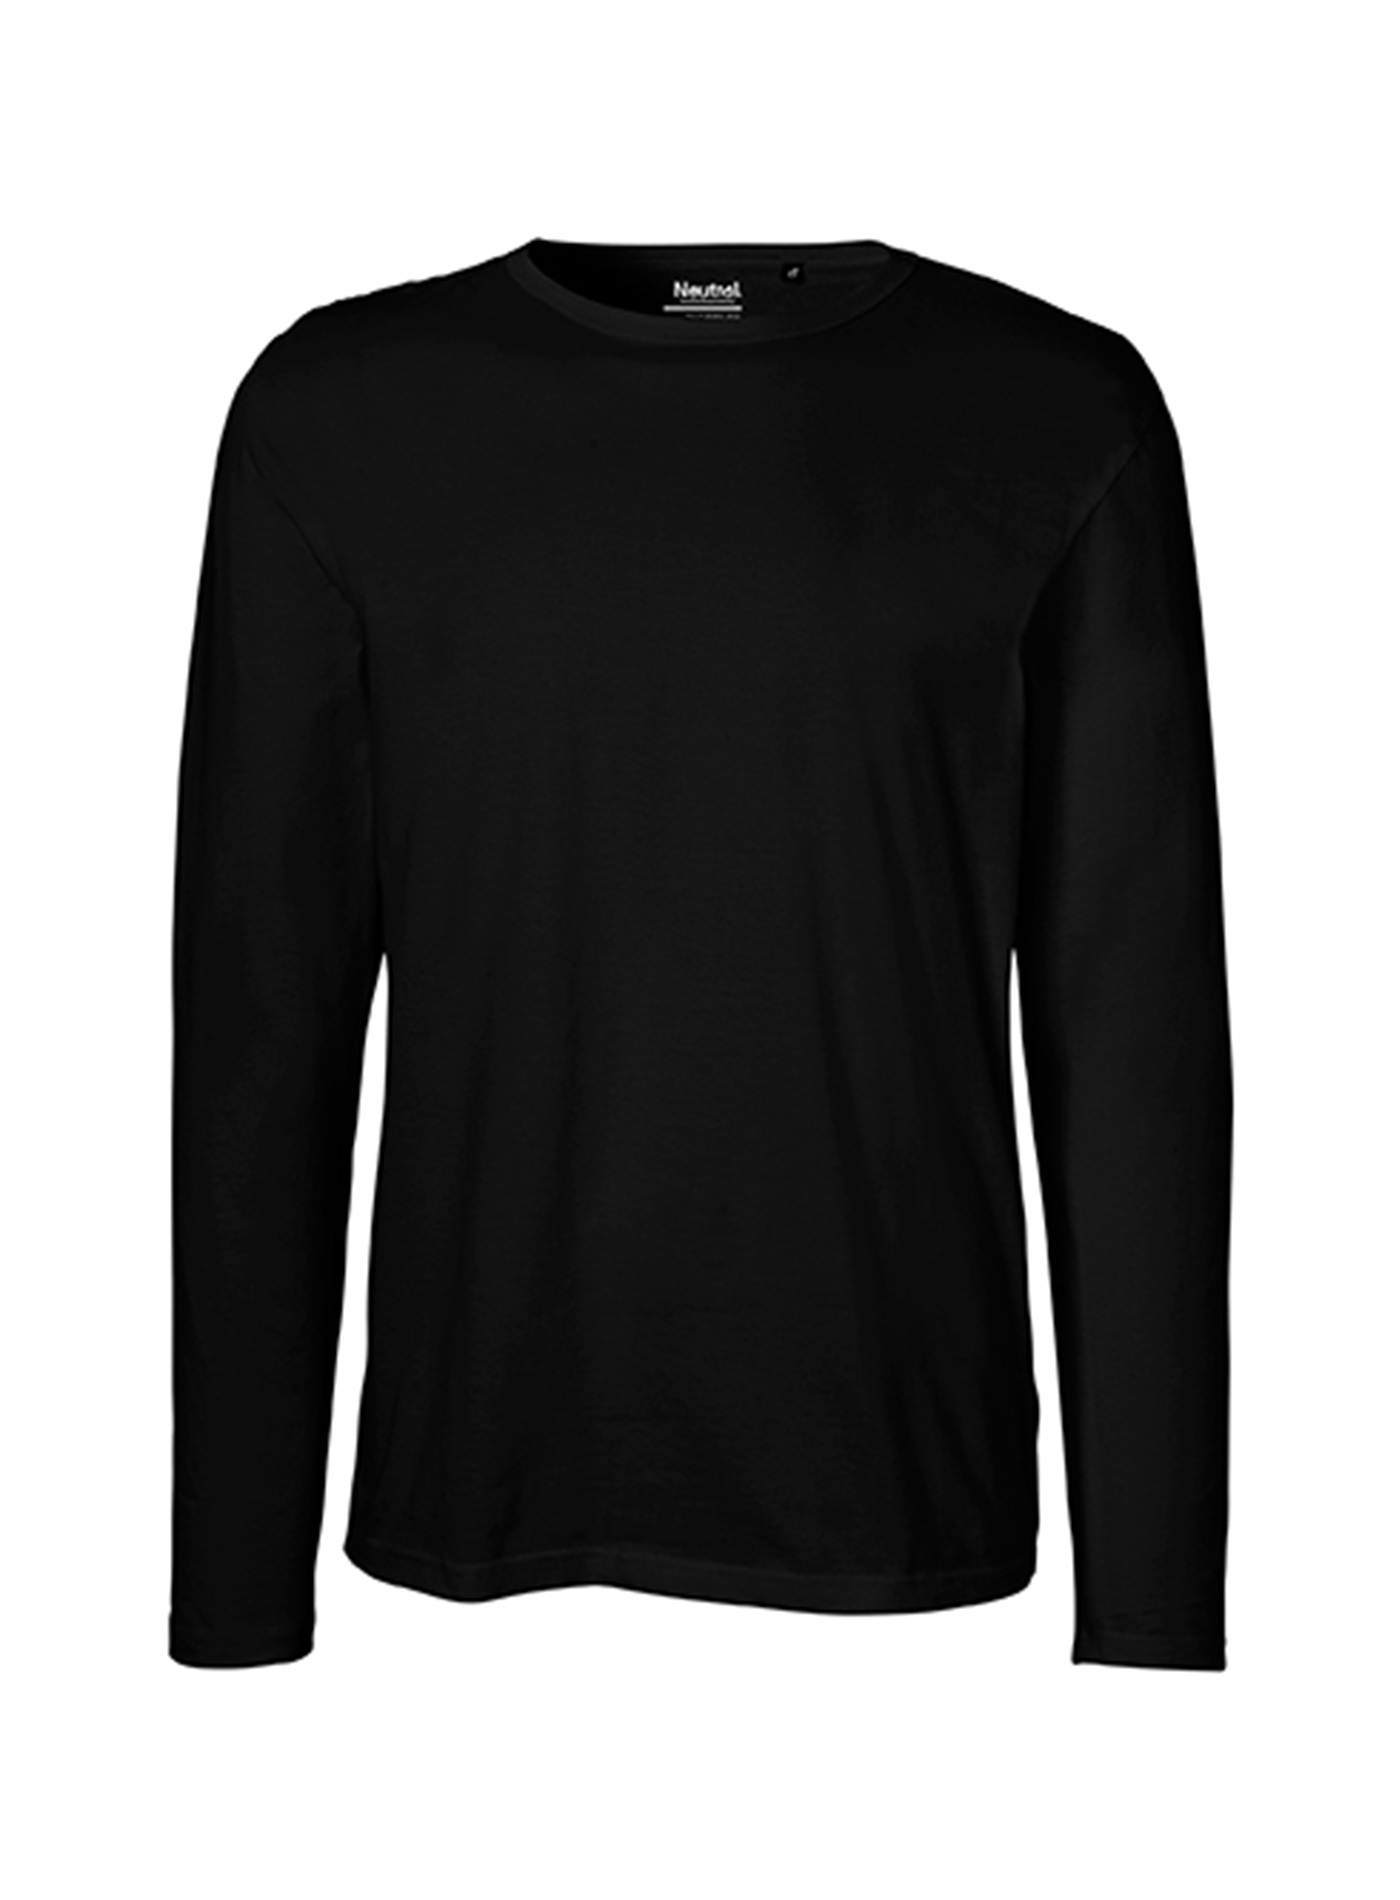 Pánské tričko s dlouhým rukávem Neutral - černá XXL